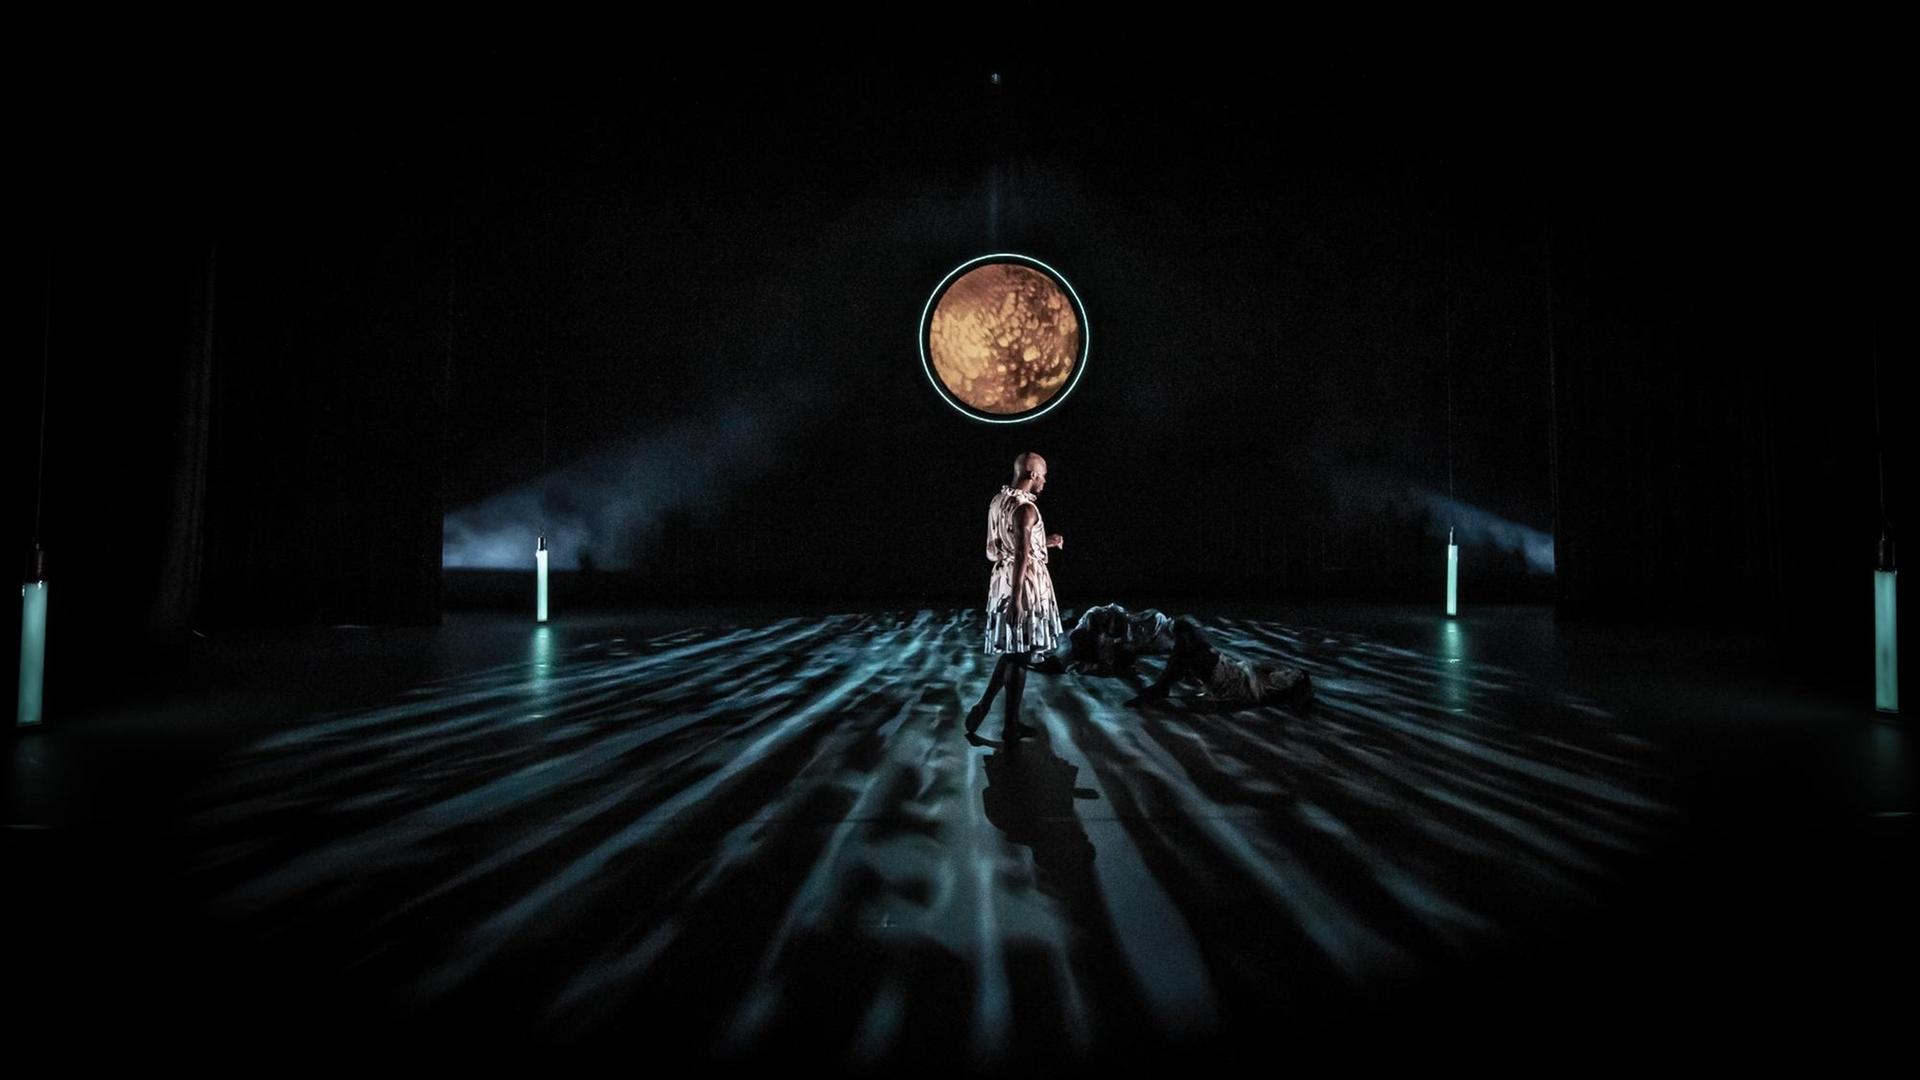 Szene aus dem Requiem: Ein Mann in einem Kleid steht auf einer mondbeschienenen Bühne. Am Boden liegen Tänzer.